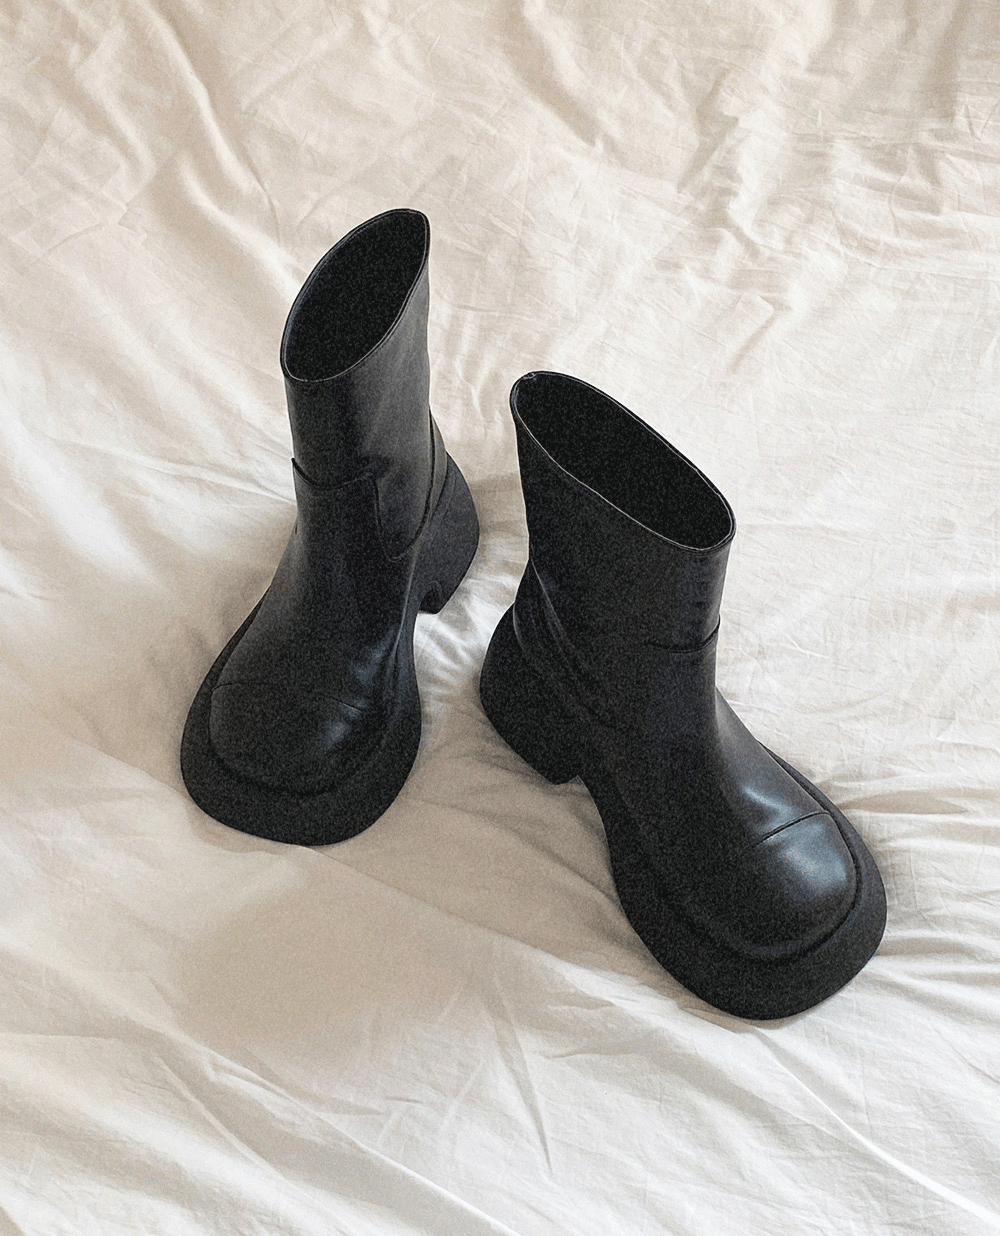 unique ankle boots